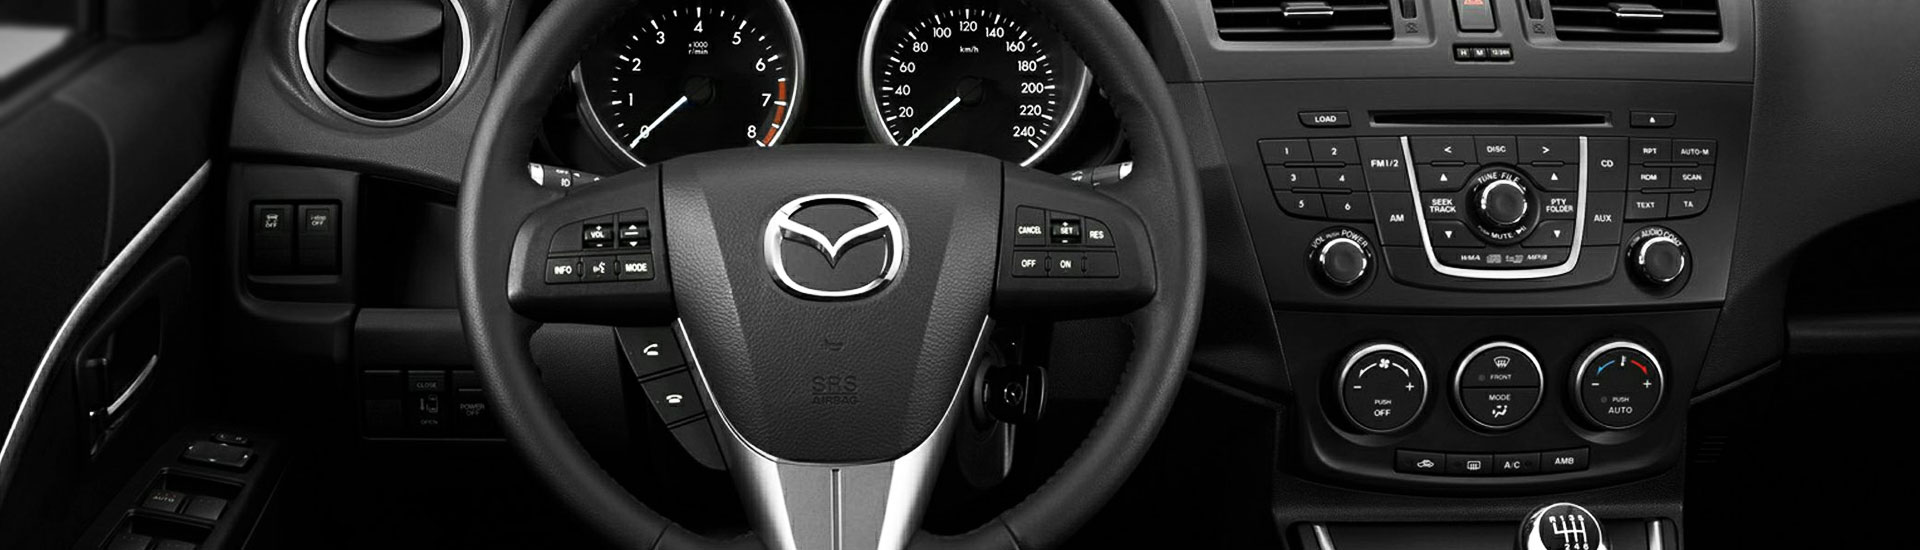 Mazda Mazda5 Custom Dash Kits